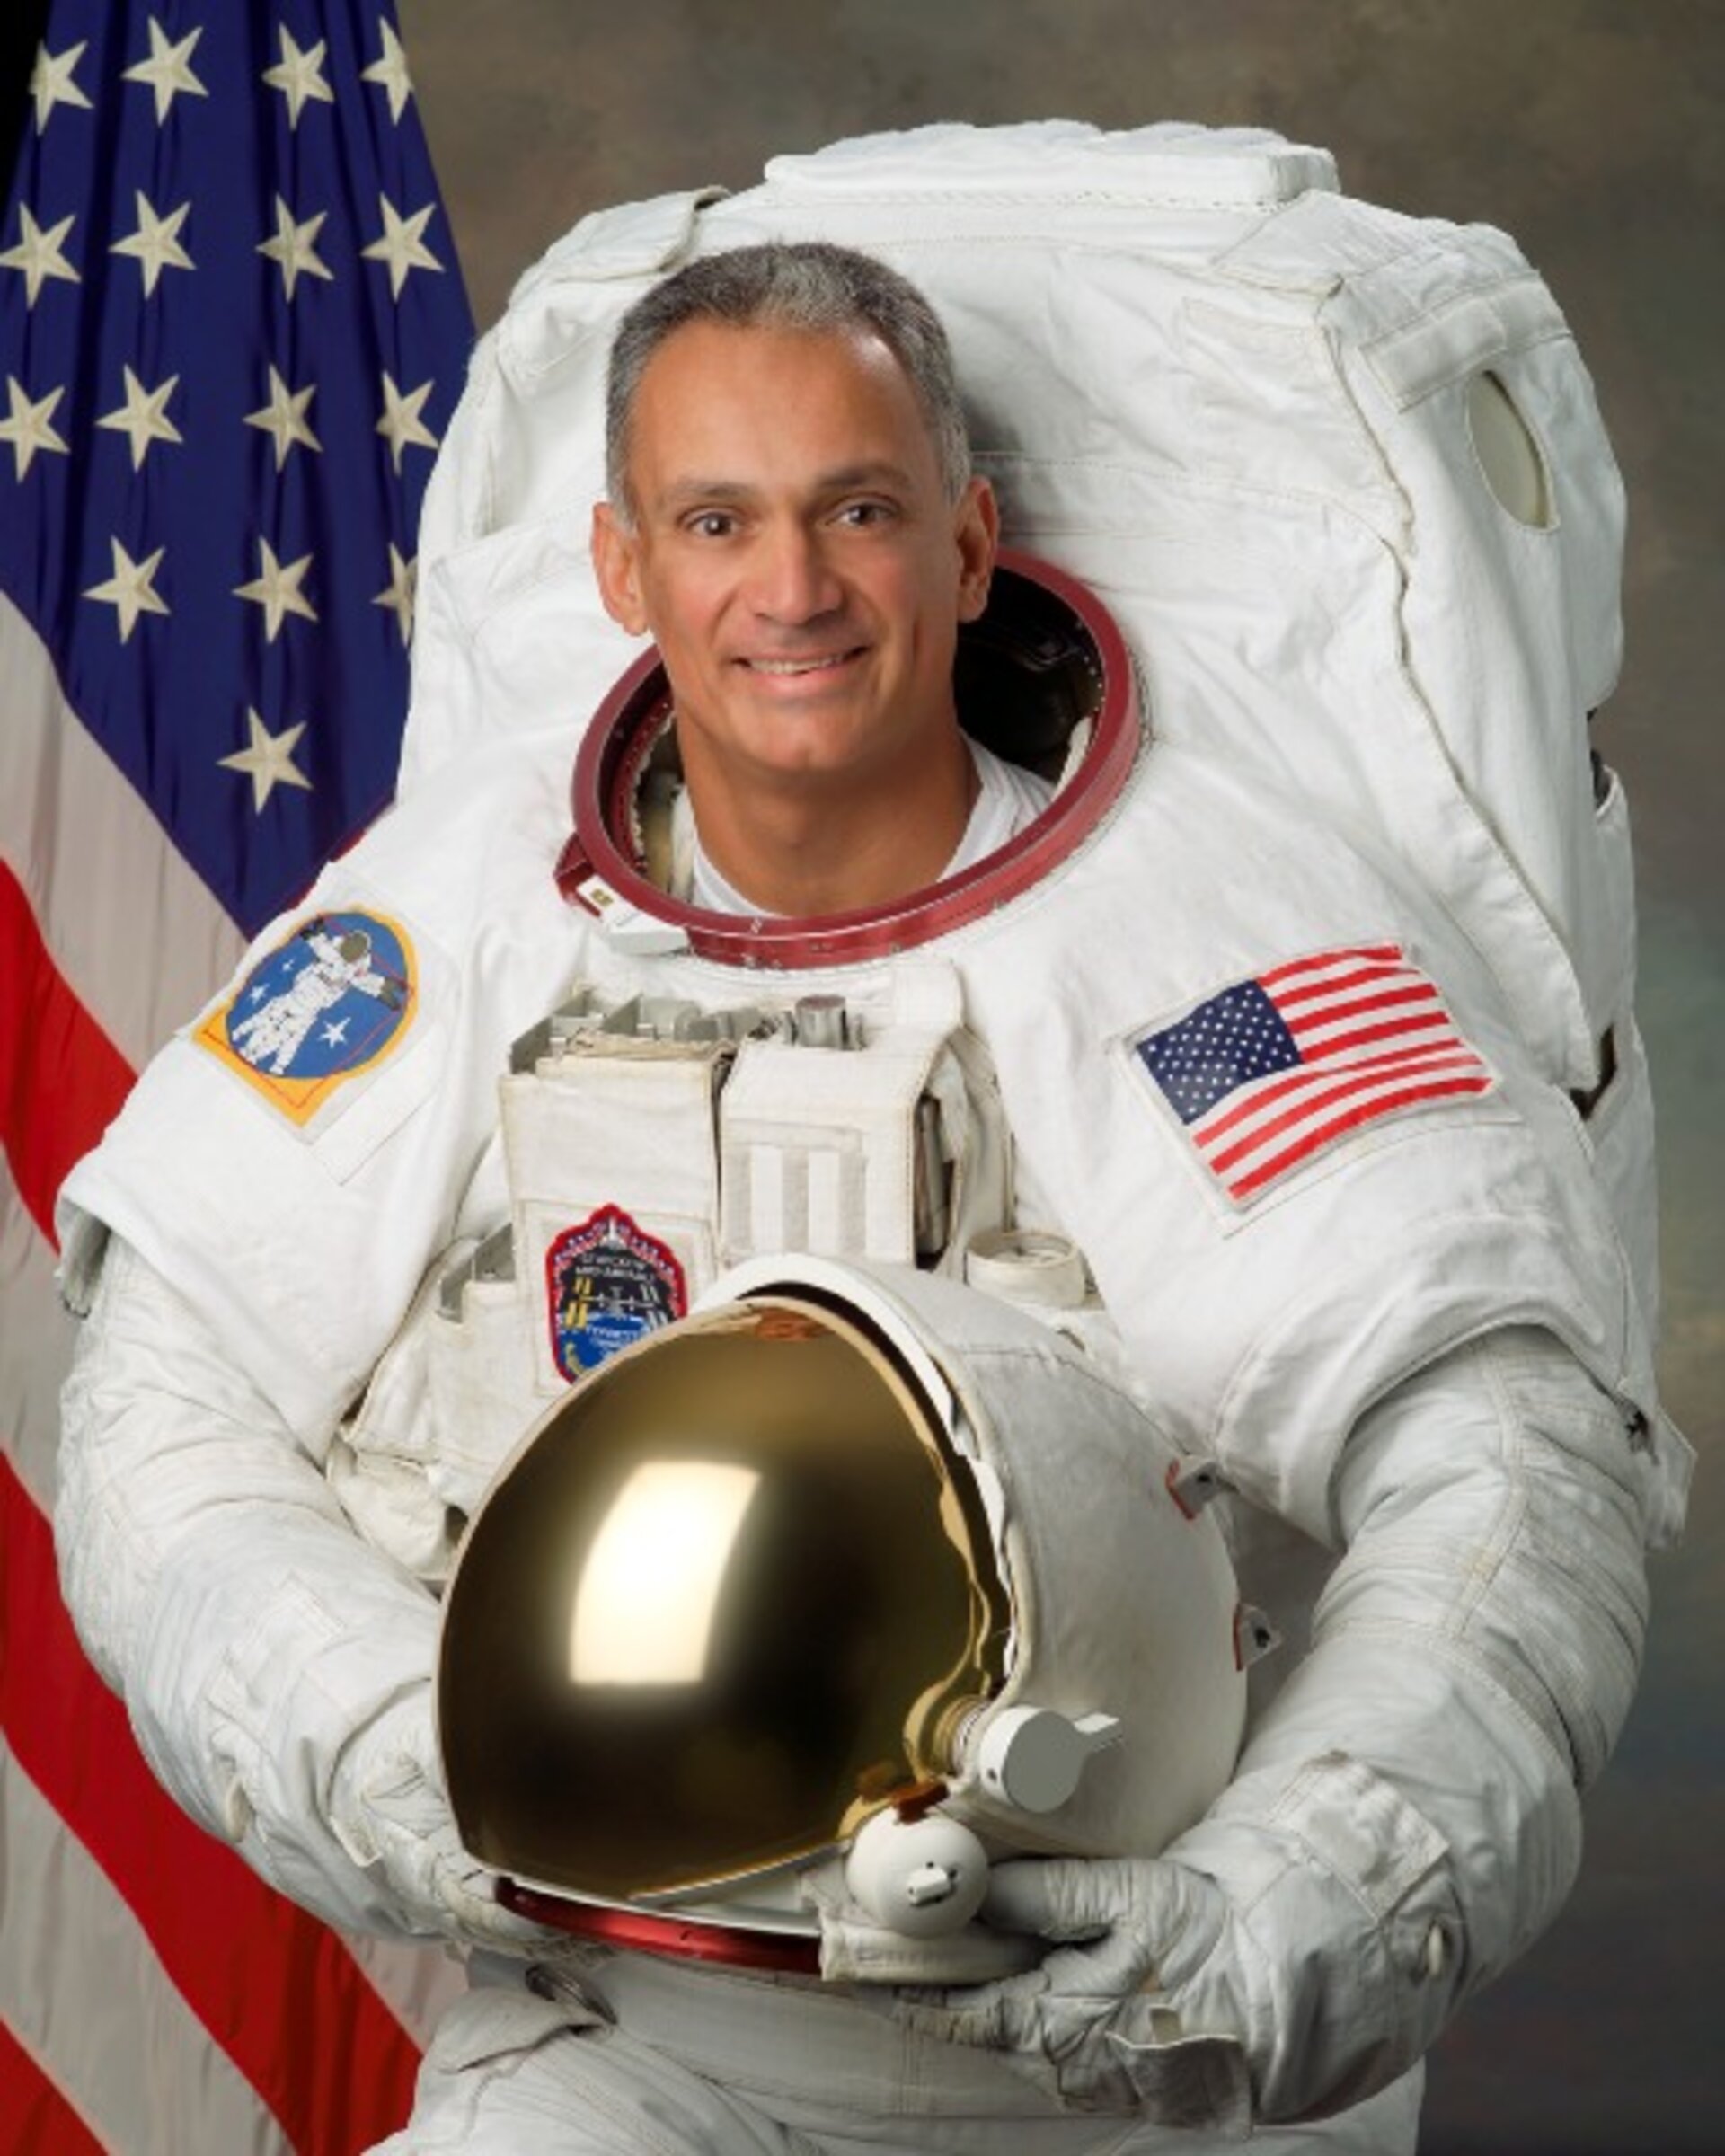 NASA astronaut John Olivas